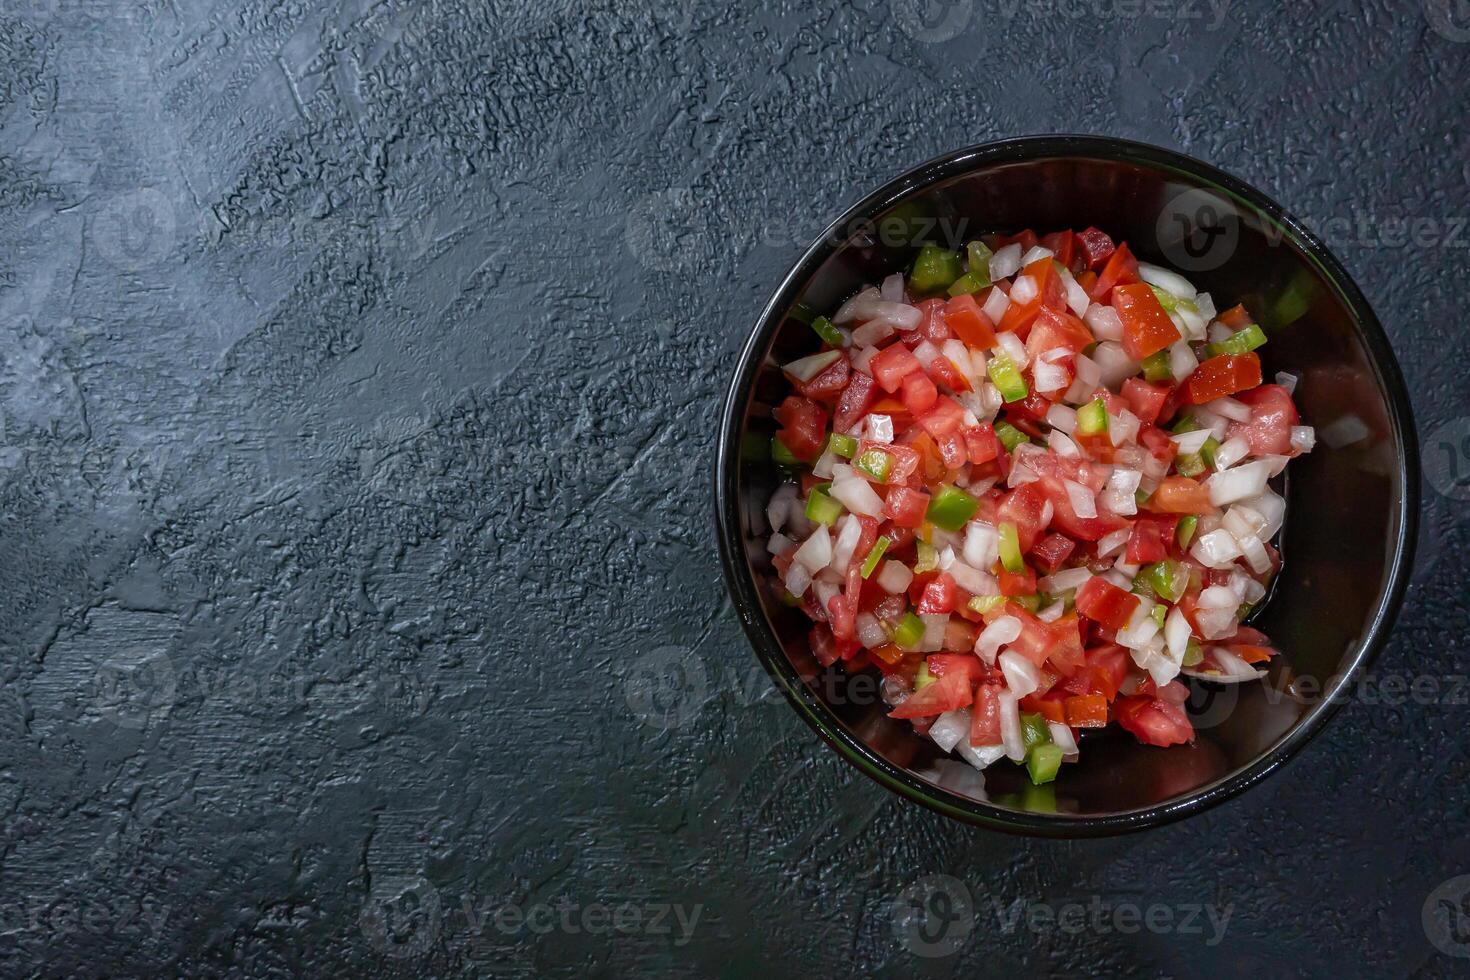 le créole sauce. typique pansement de Argentine et le du sud partie de Latin Amérique. fabriqué avec tomate, oignon, cloche poivre, le vinaigre et huile. photo